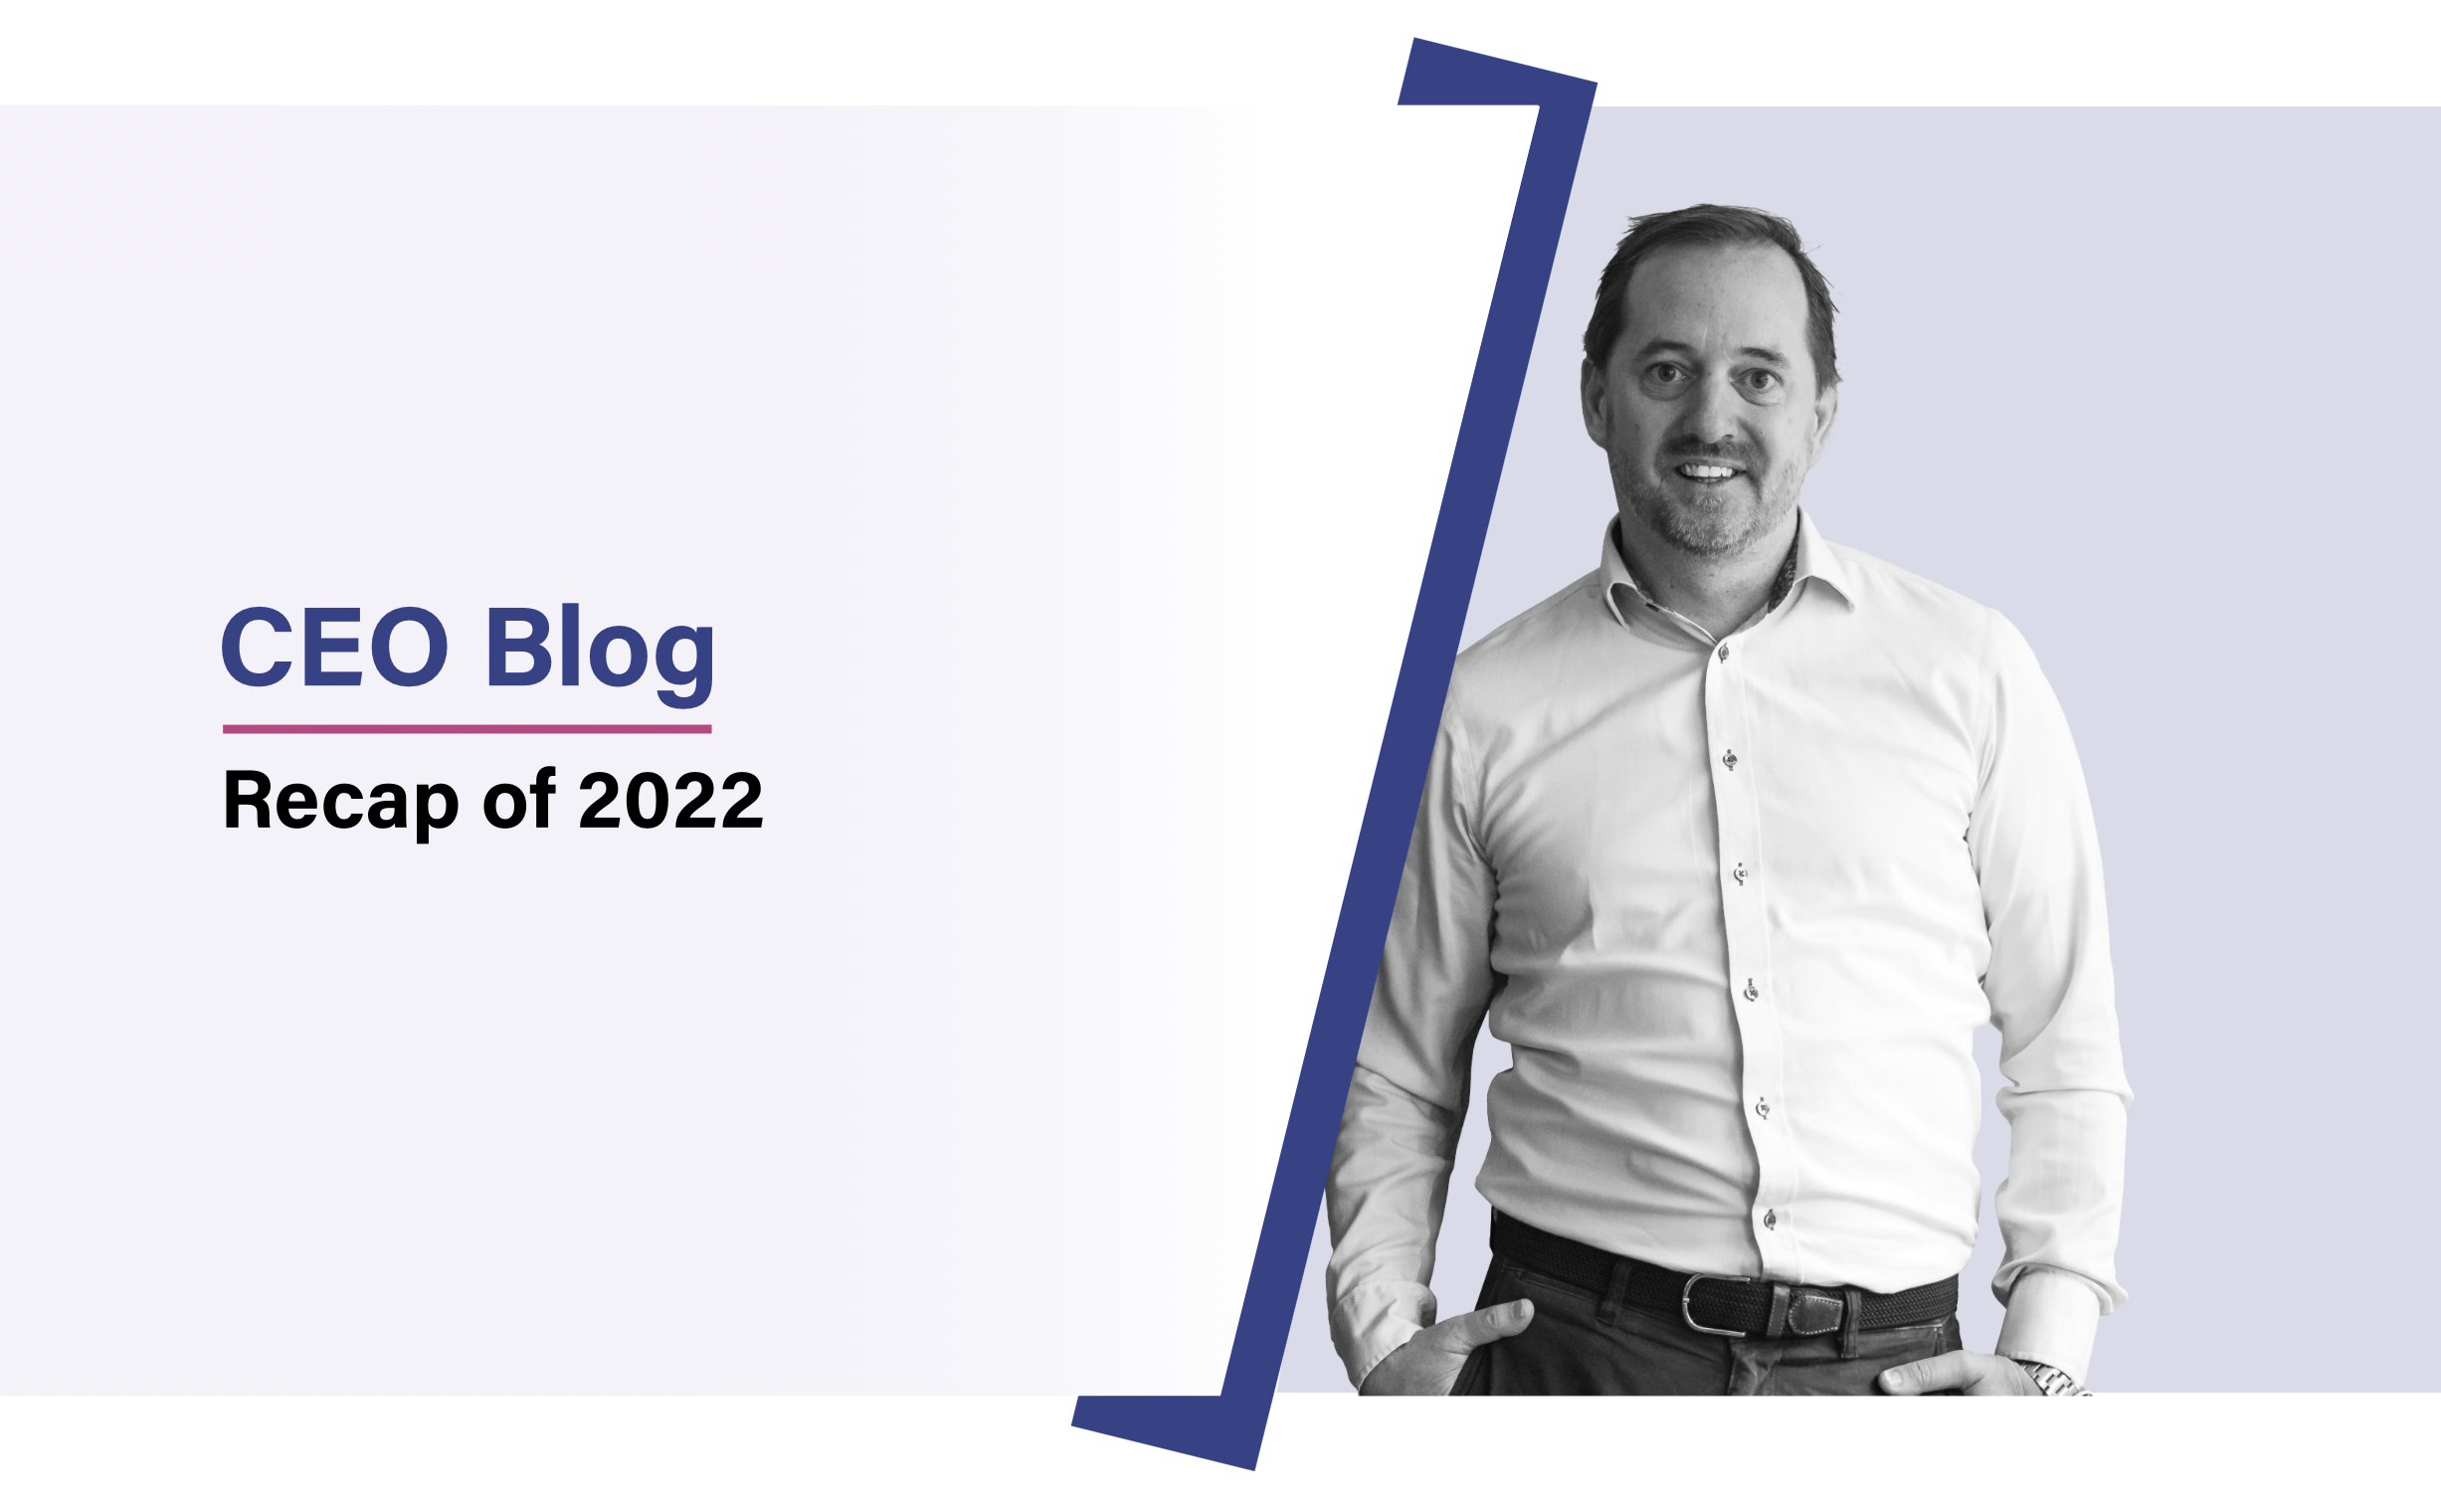 CEO blog: A recap of 2022